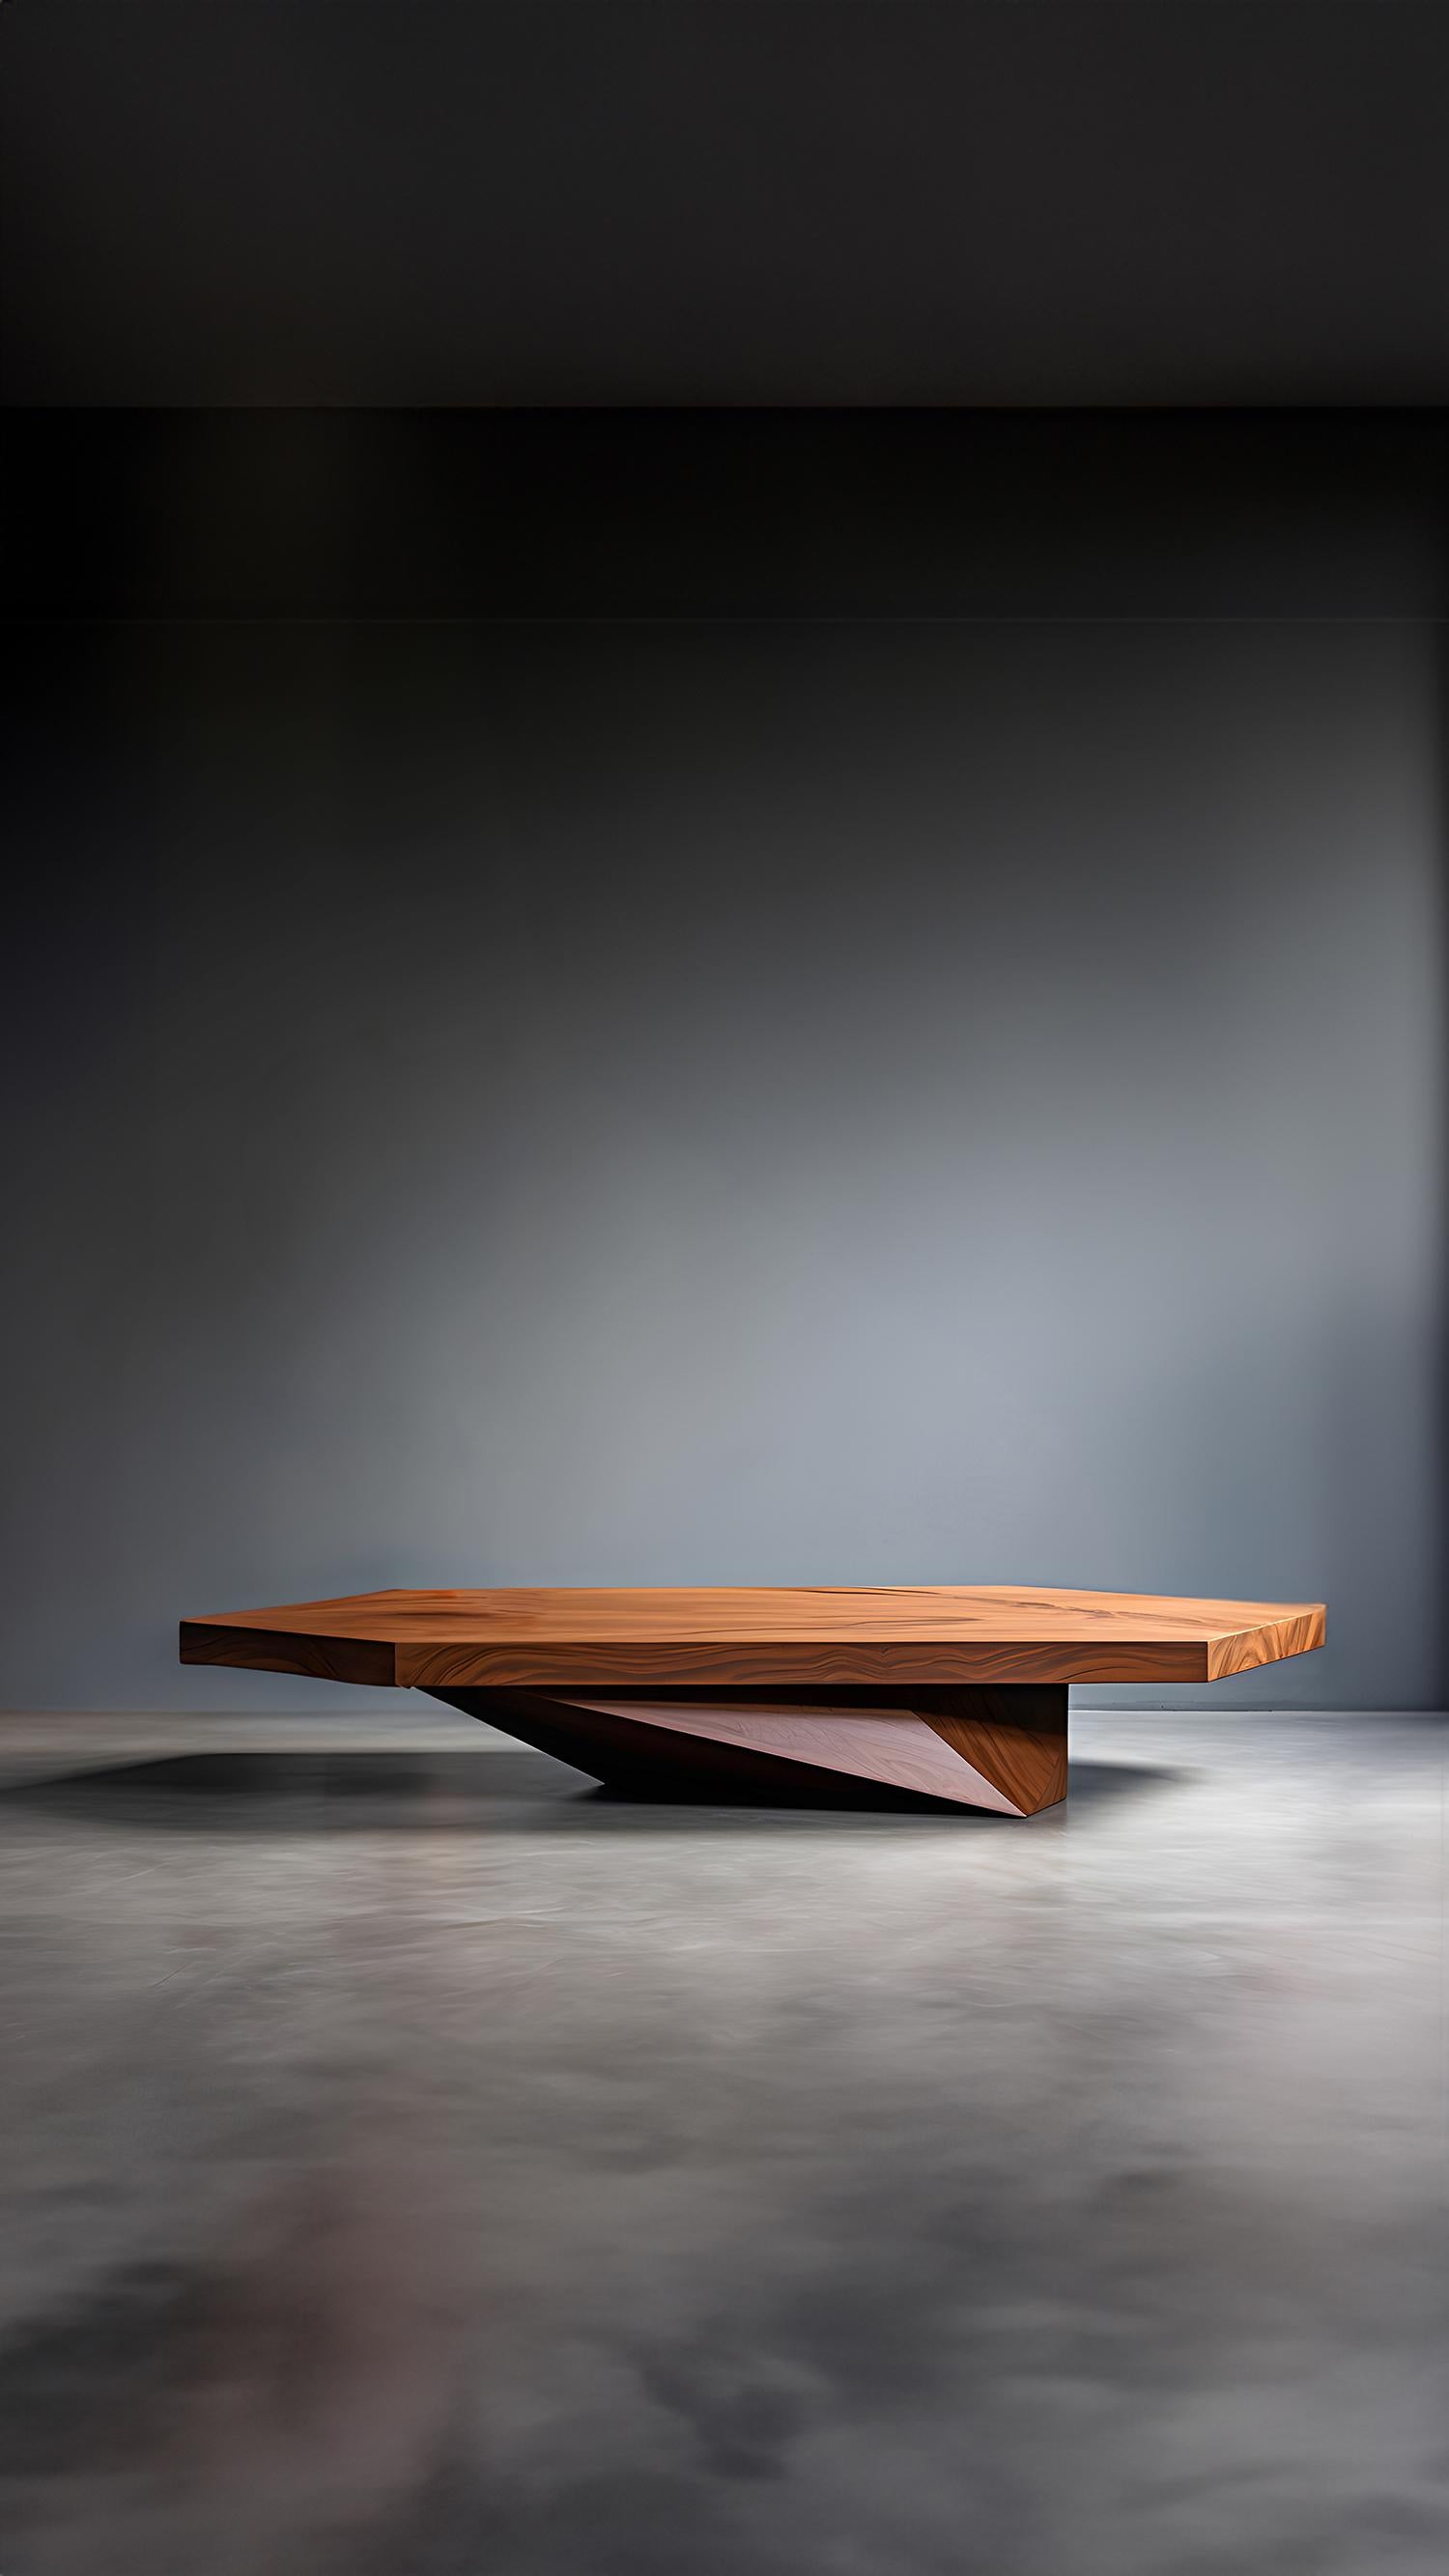 Table basse sculpturale en bois massif, Table centrale Solace S20 par Joel Escalona


La série de tables Solace, conçue par Joel Escalona, est une collection de meubles qui respire l'équilibre et la présence, grâce à ses formes sensuelles, denses et